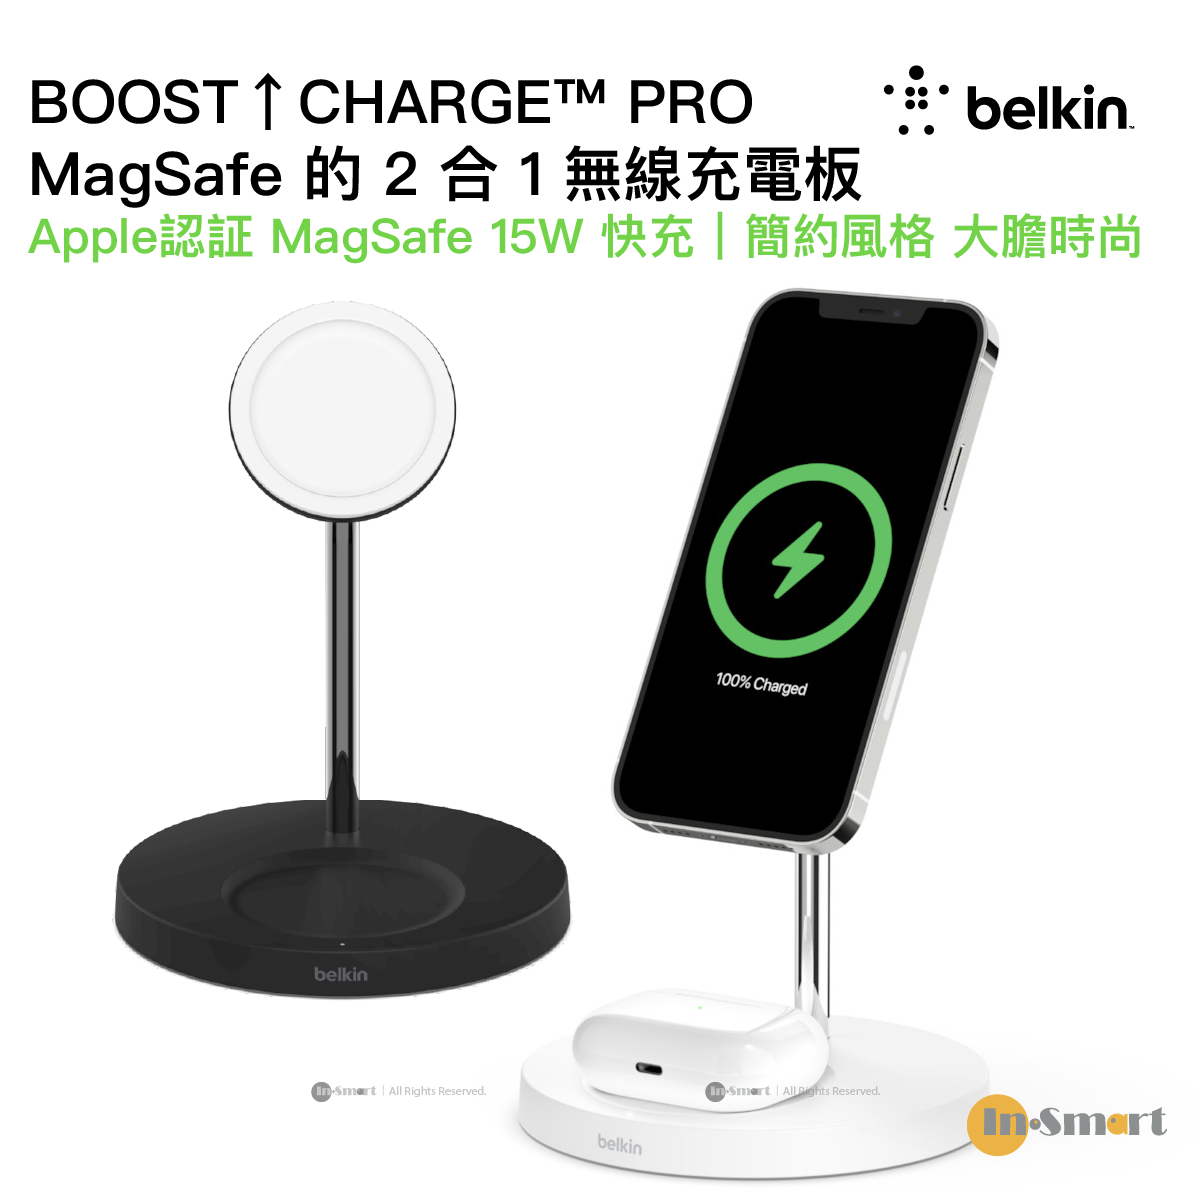 Belkin | BOOST↑CHARGETM PRO MagSafe 二合一無線充電座- 黑色| 顏色